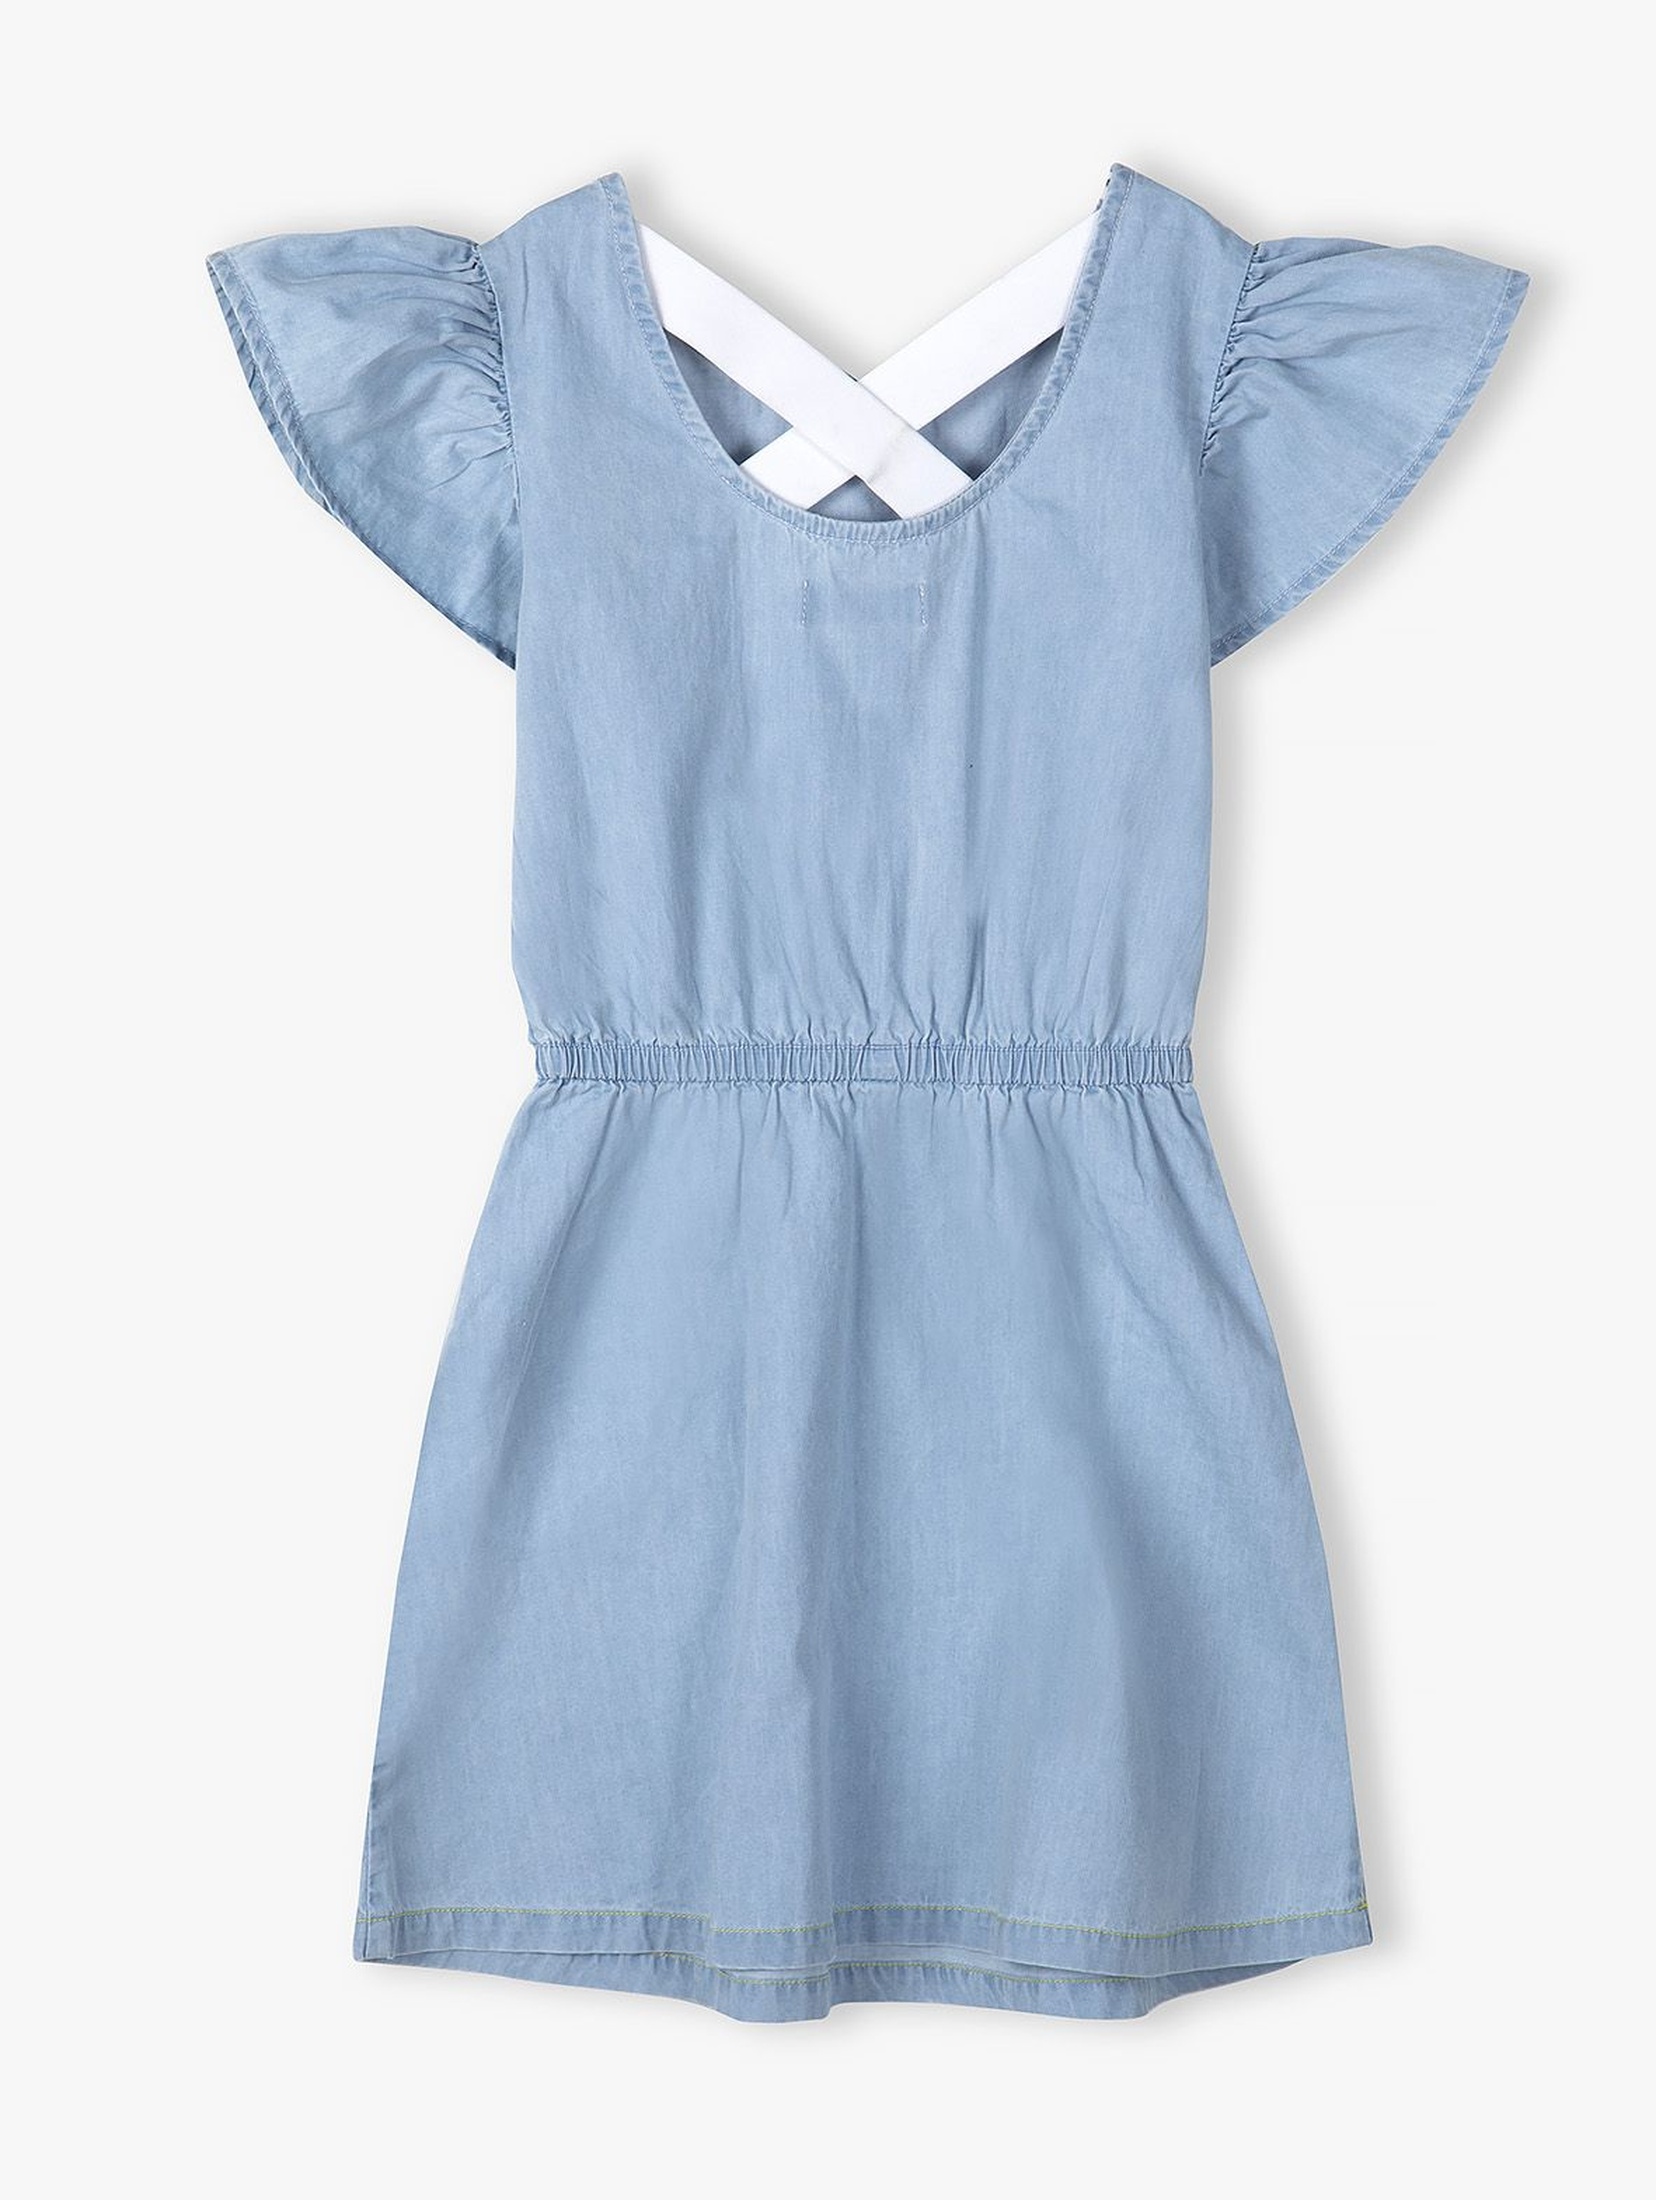 Błękitna sukienka na lato dla dziewczynki